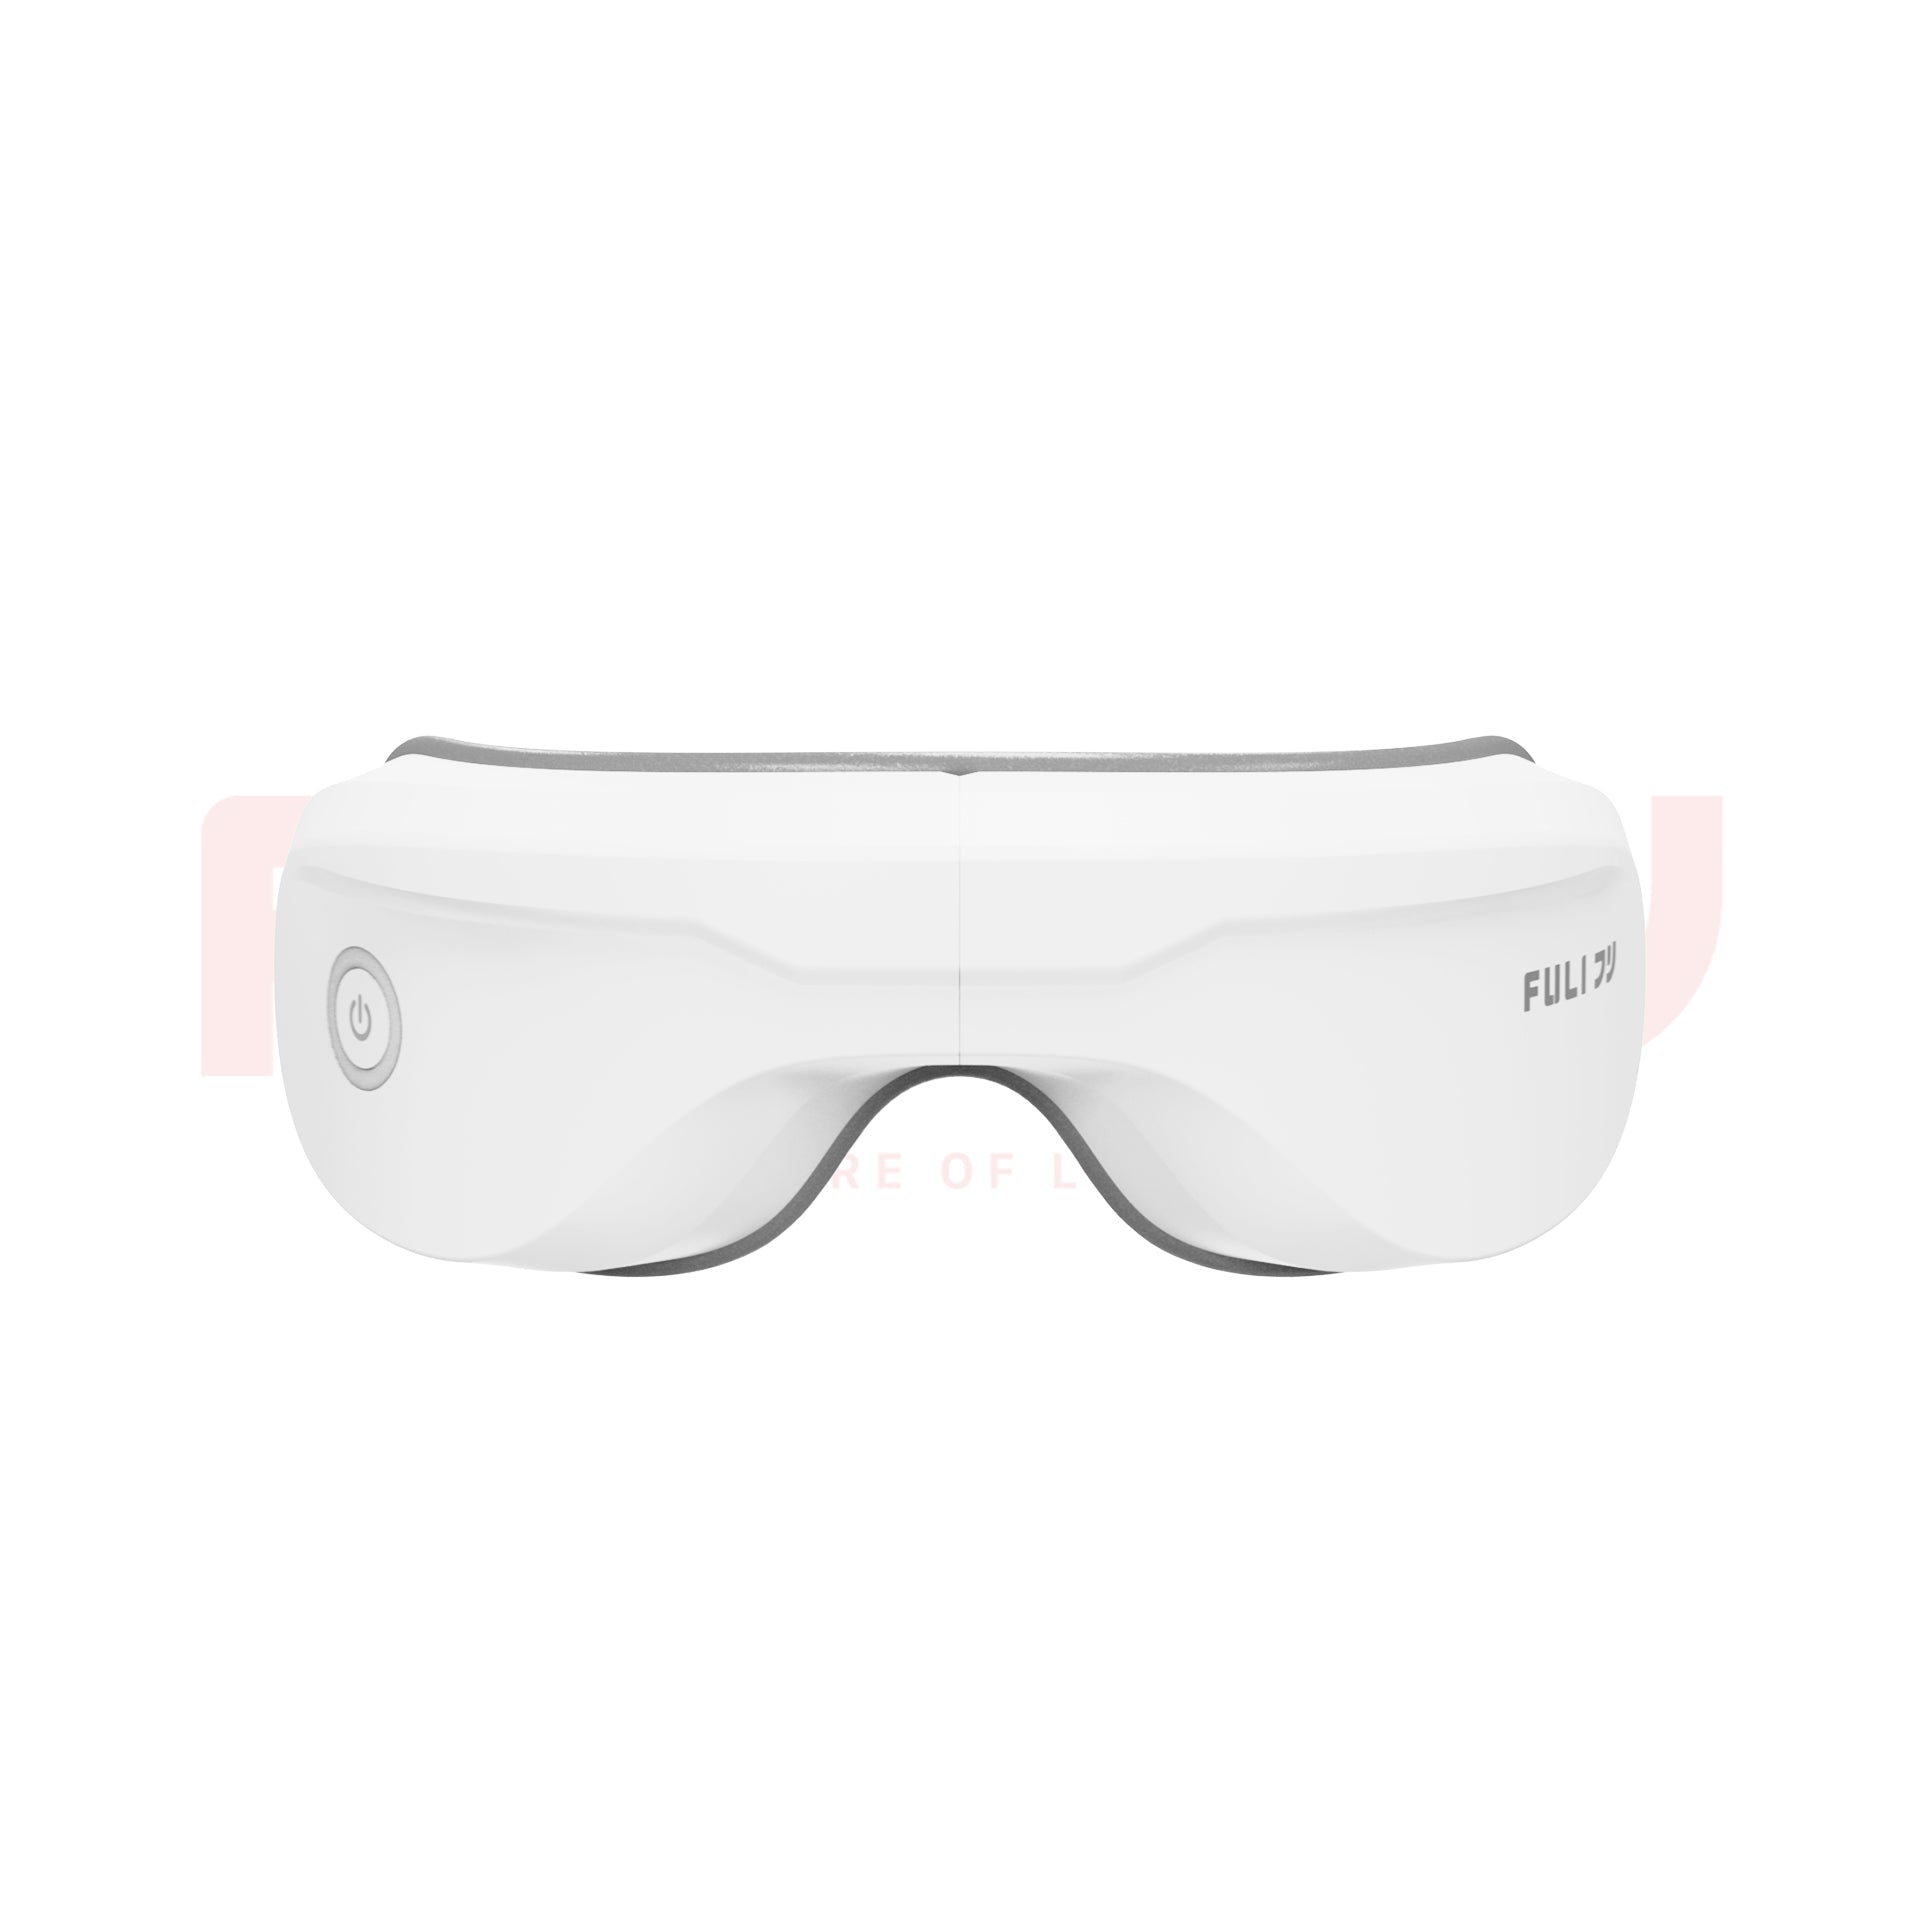 เซตคู่ผ่อนคลาย FULI -5℃ Bread Shape Pillow With Cool Tech Gel+4D Smart Eye Massager